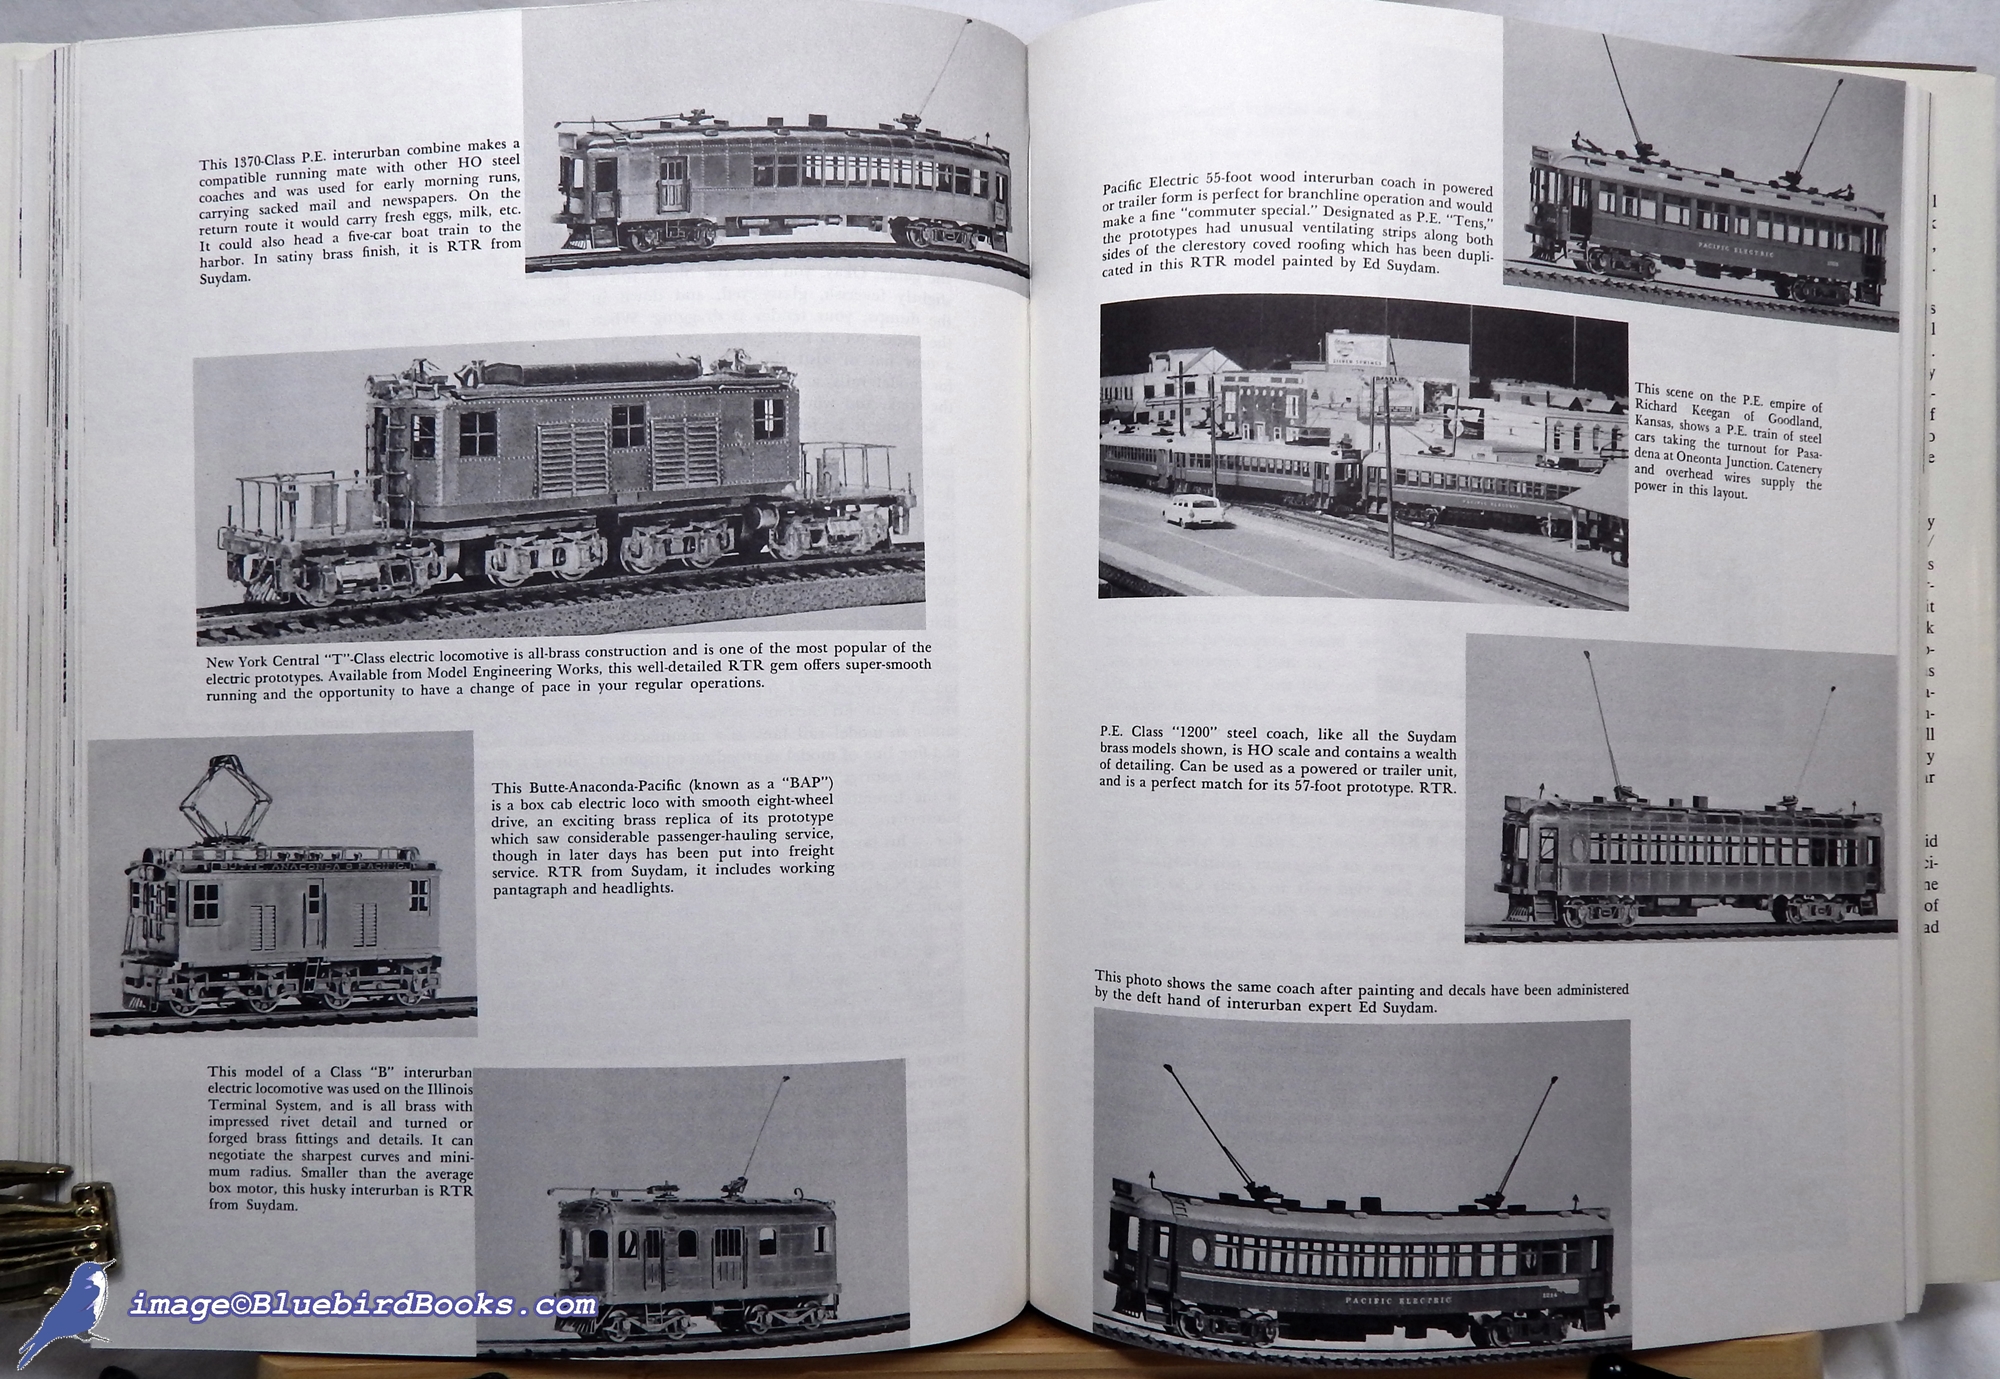 SUTTON, DAVID - The Complete Book of Model Railroading